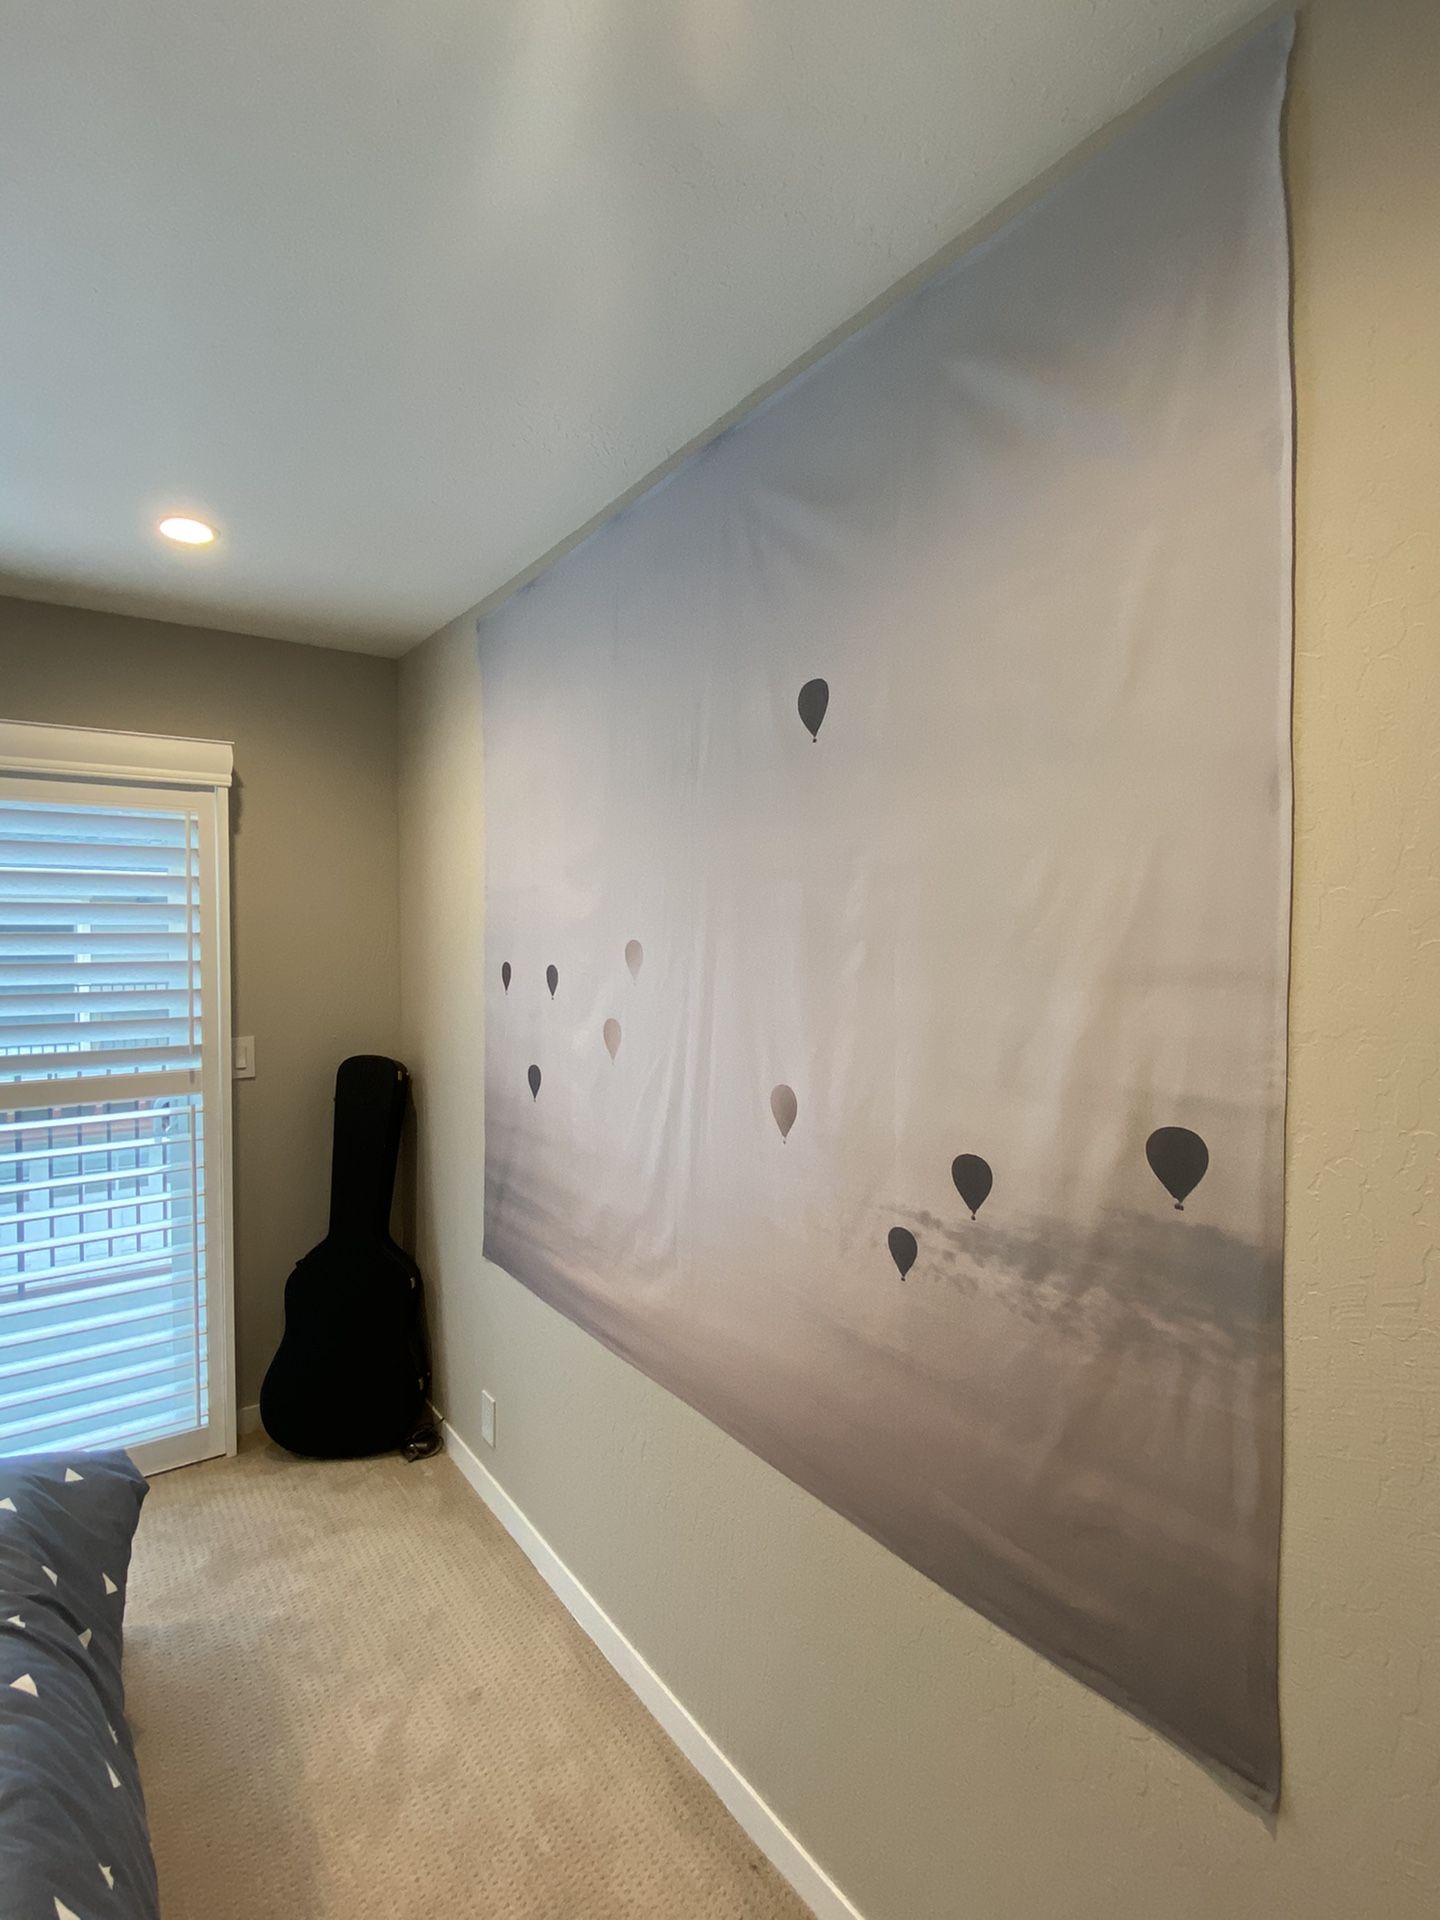 Hot air balloon wall tapestry